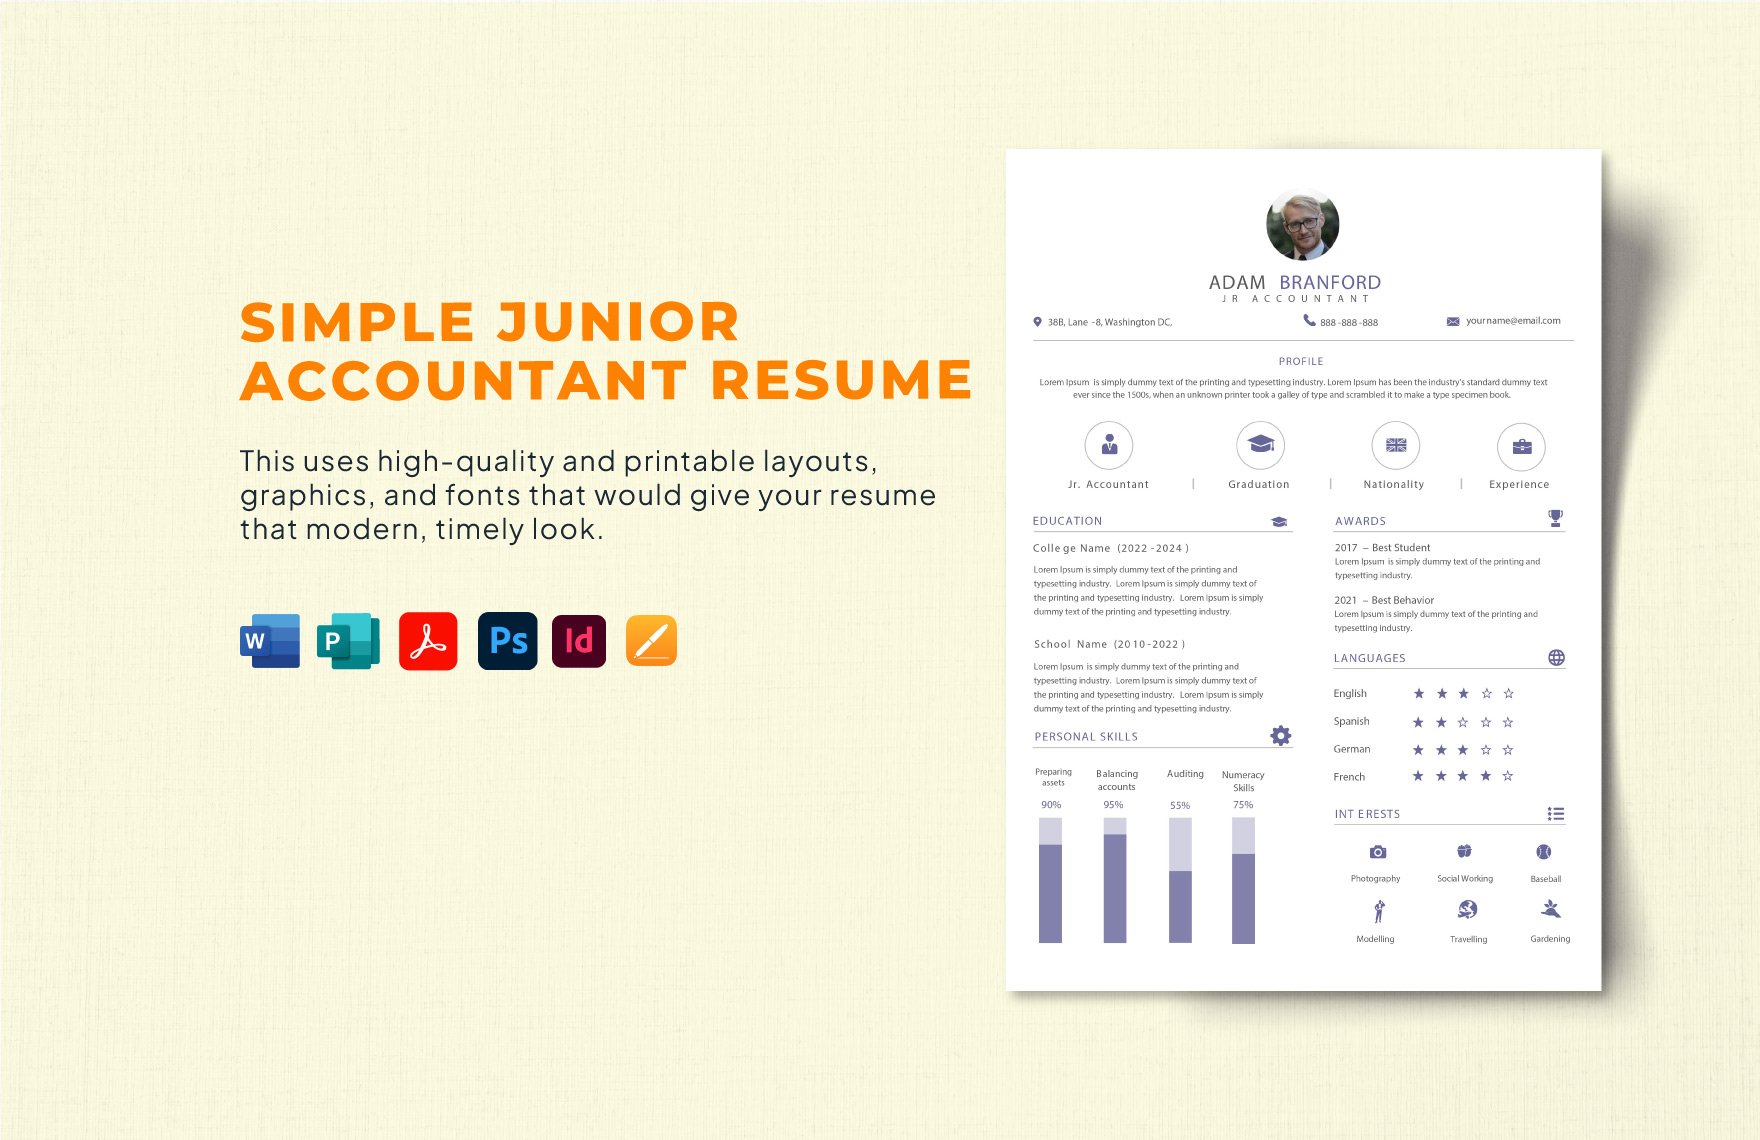 Simple Junior Accountant Resume